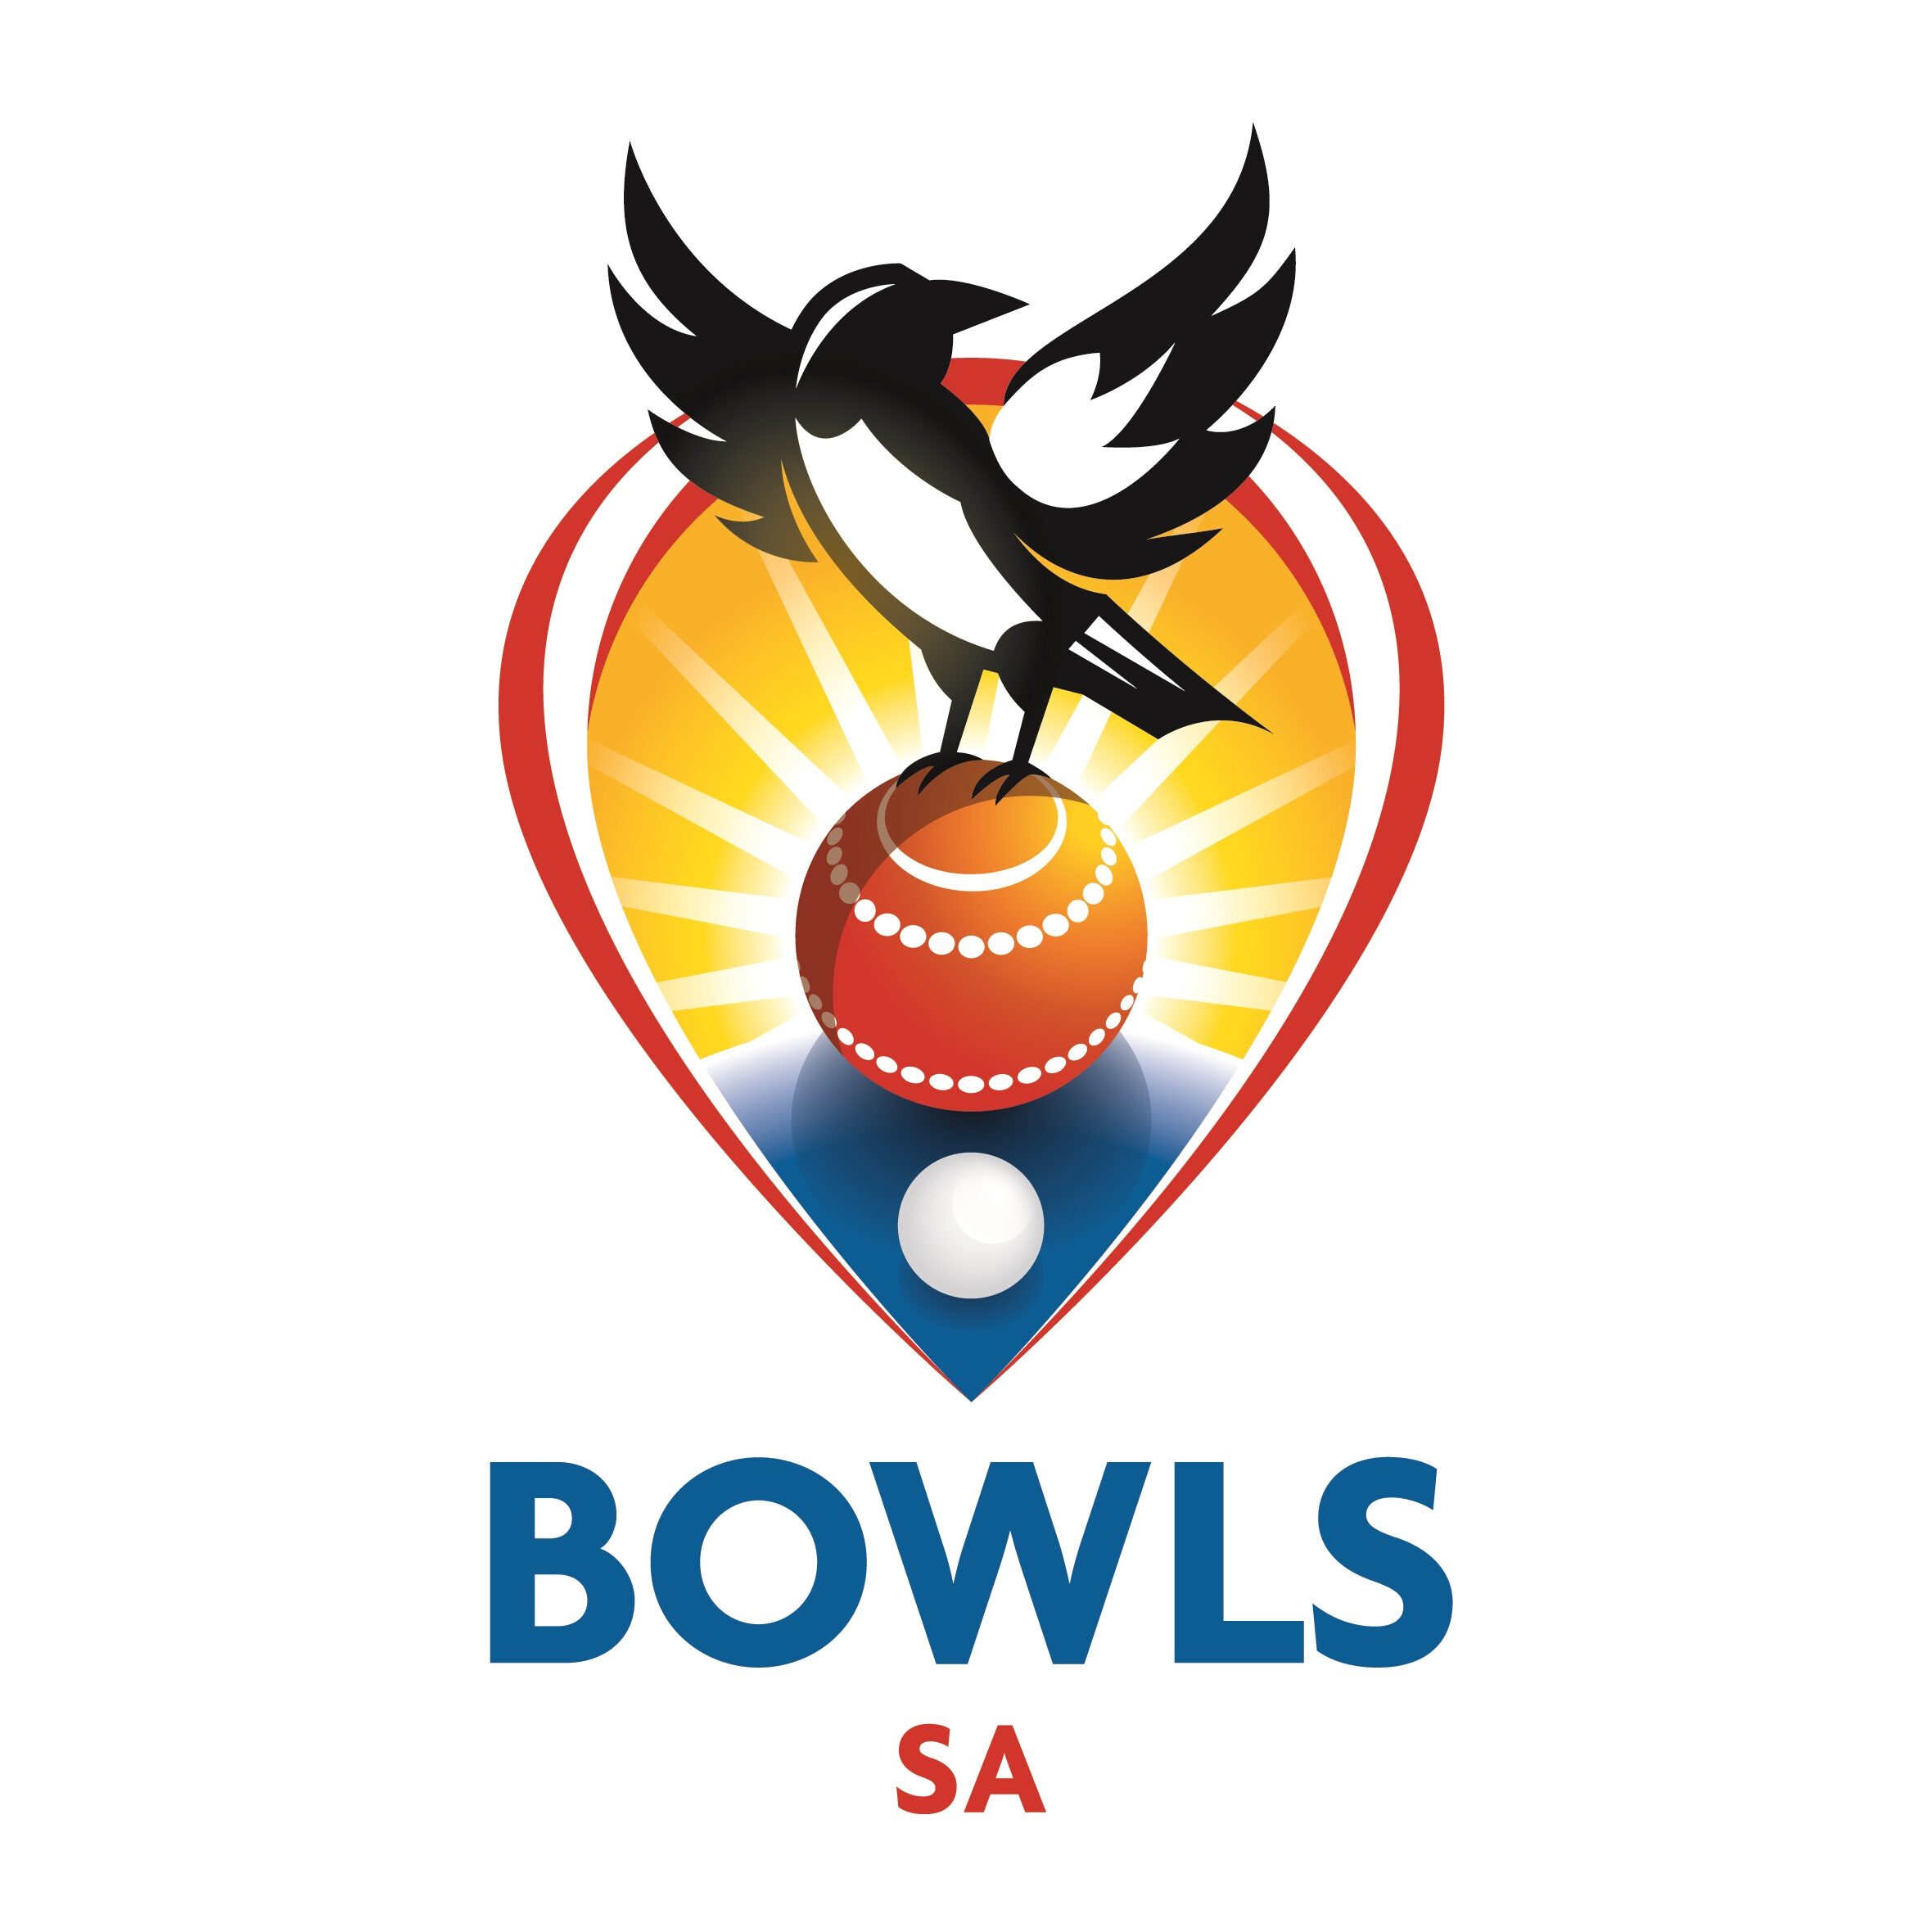 Two Board Directors Appointed at Bowls SA AGM - Bowls SA